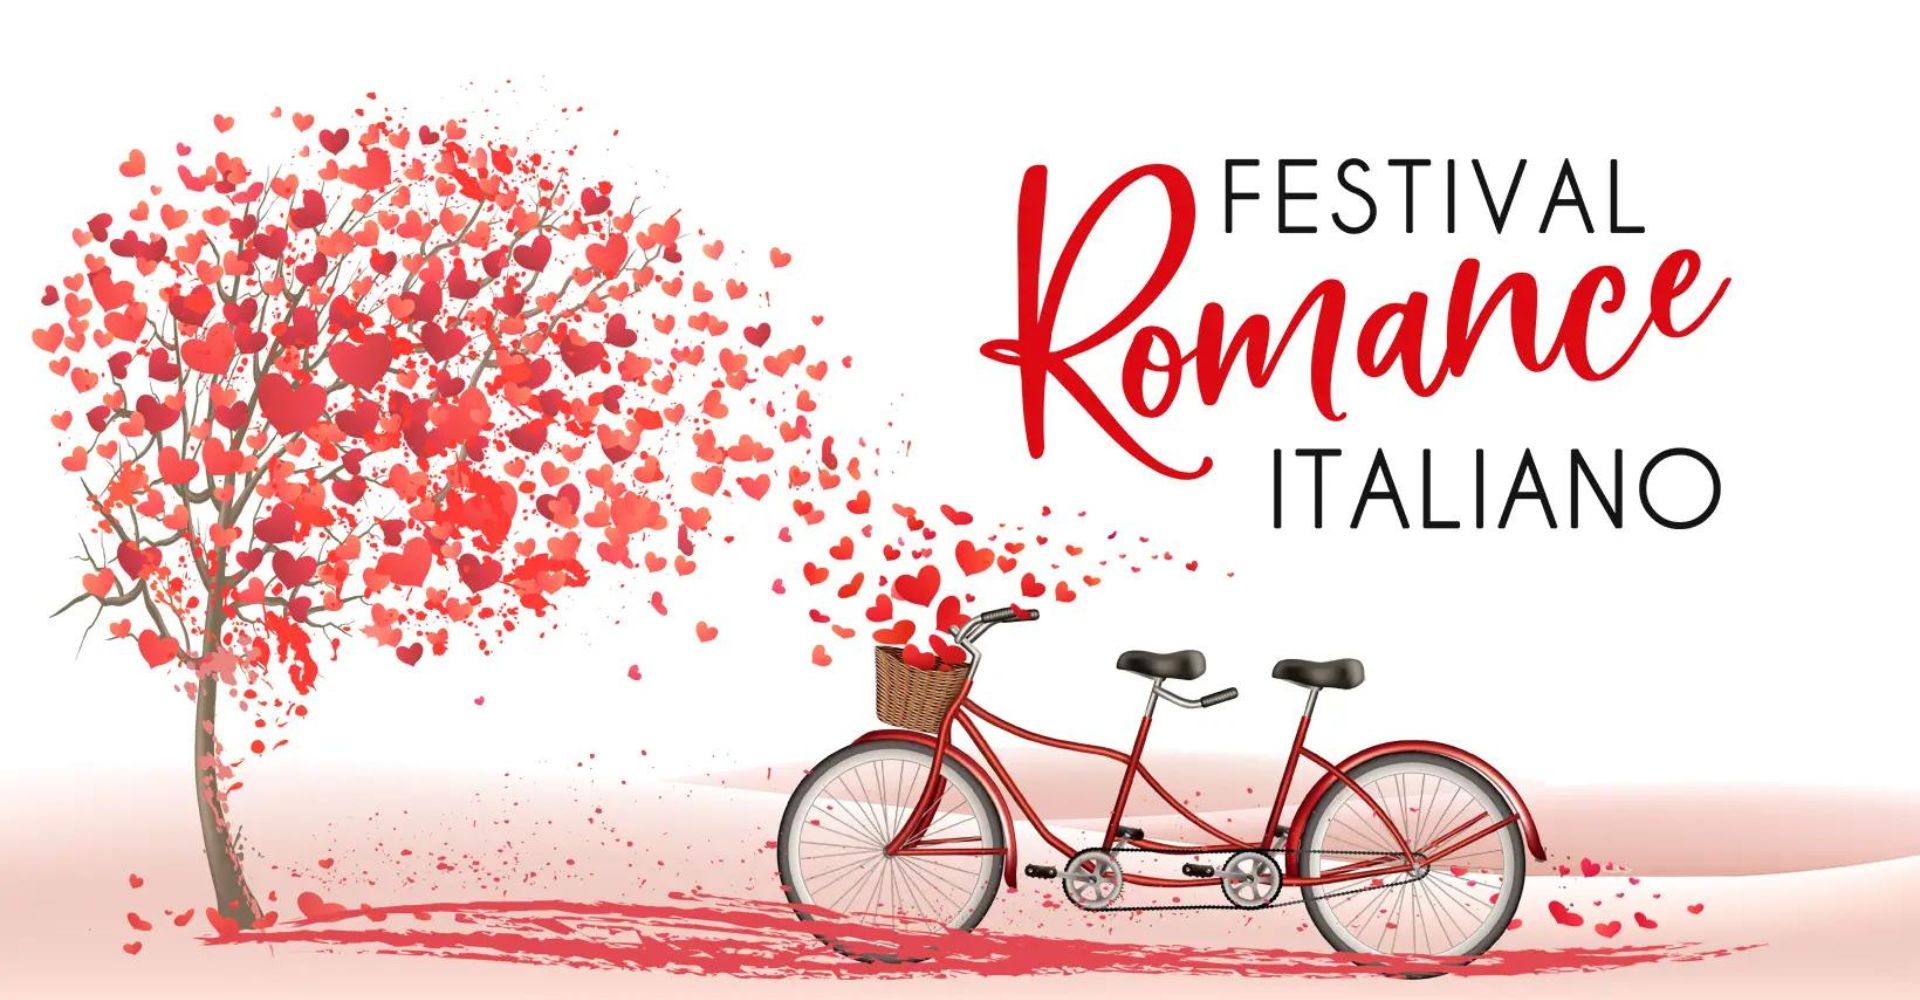 Festival del romance